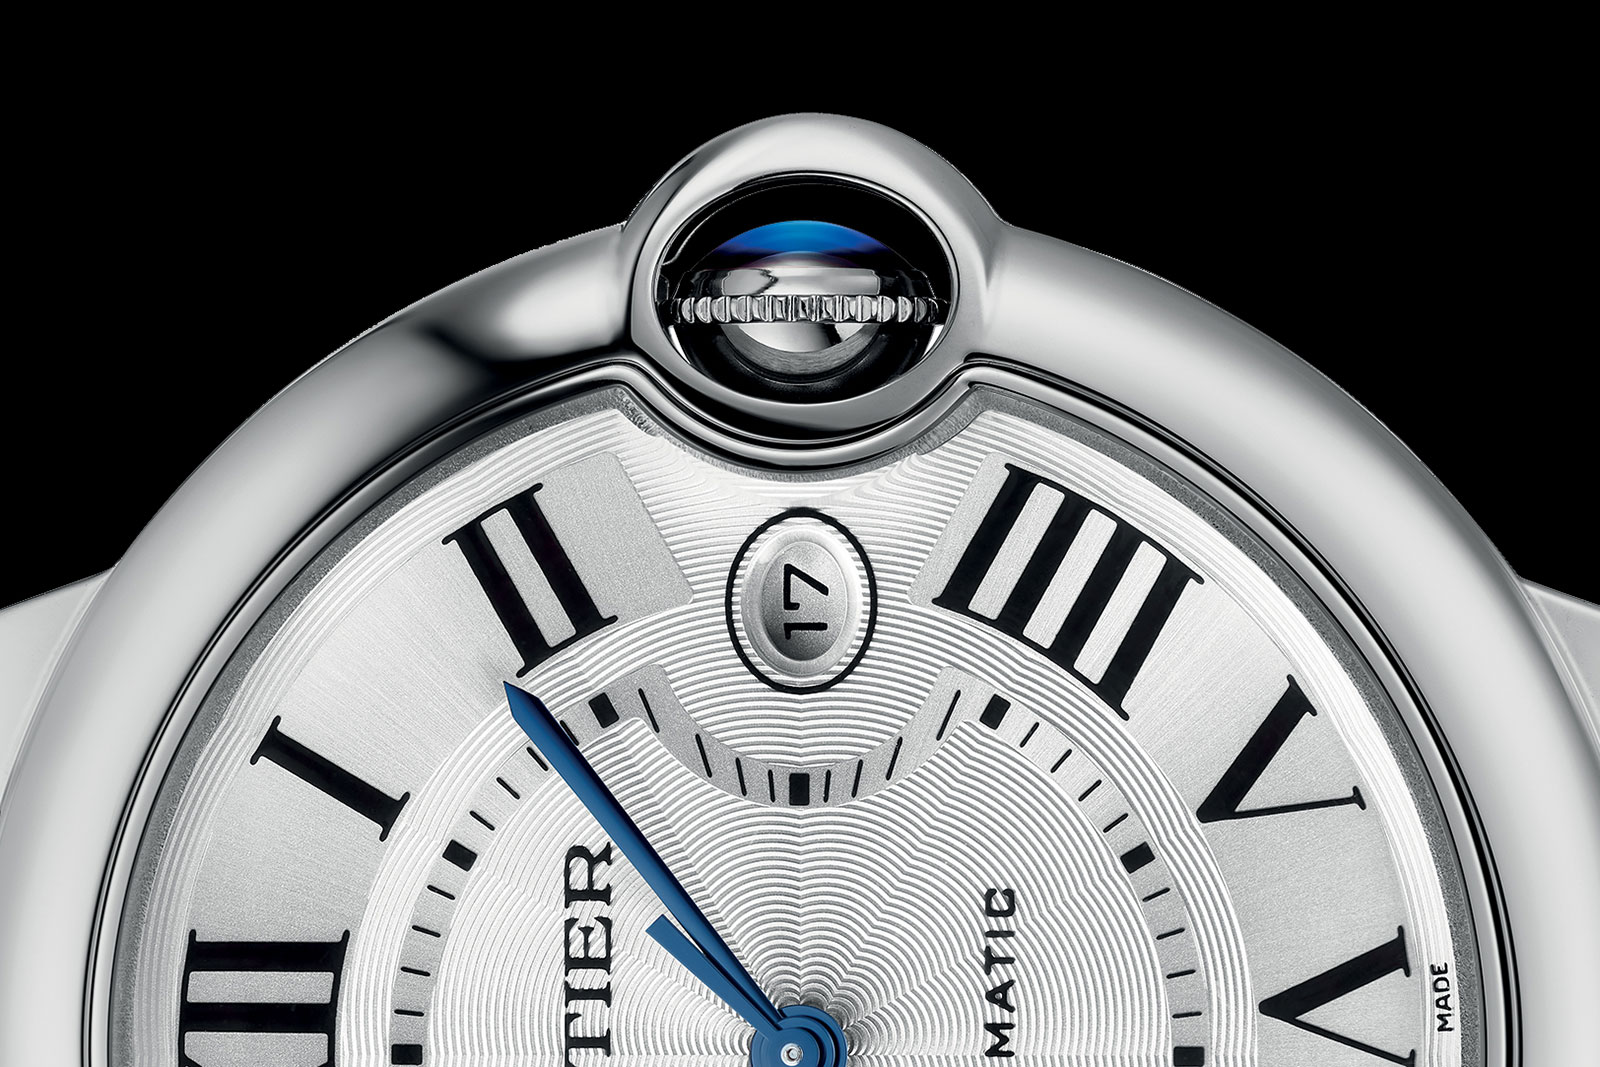 Ballon Bleu De Cartier Watch, 40mm, Automatic Movement, Steel